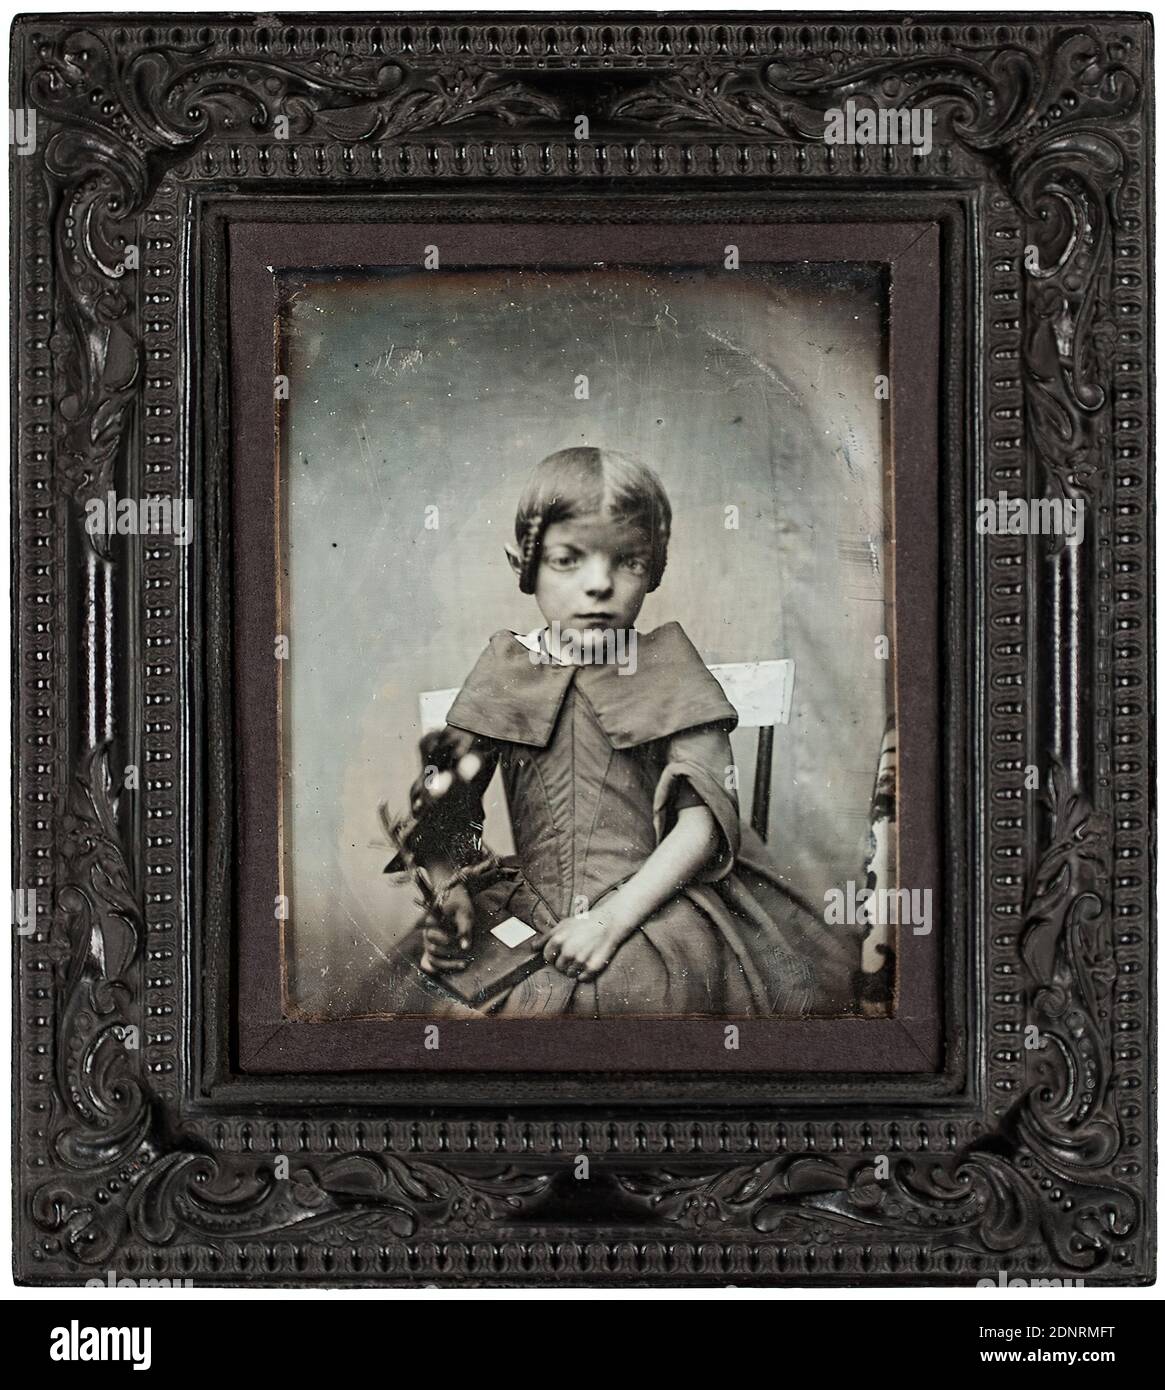 Porträt eines Mädchens, Daguerreotypie, Bildgröße : Höhe: 7.5 cm; Breite: 6.2 cm, Porträtfotografie, Halbportrait, Mädchen, sitzende Figur Stockfoto